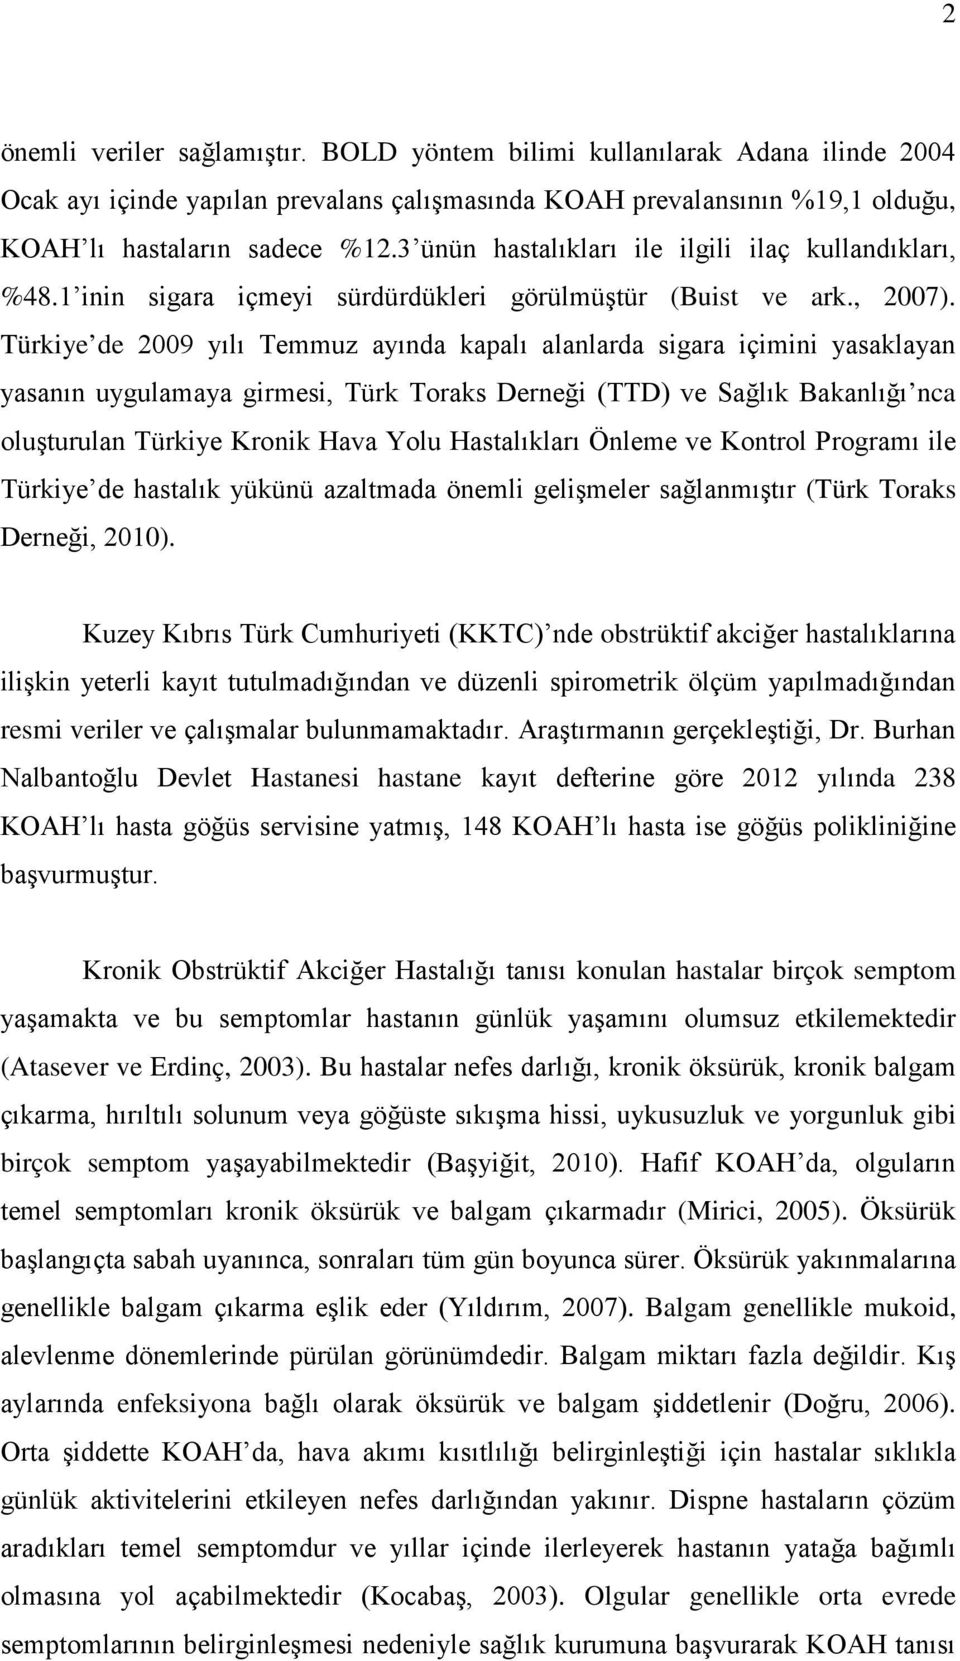 Türkiye de 2009 yılı Temmuz ayında kapalı alanlarda sigara içimini yasaklayan yasanın uygulamaya girmesi, Türk Toraks Derneği (TTD) ve Sağlık Bakanlığı nca oluşturulan Türkiye Kronik Hava Yolu